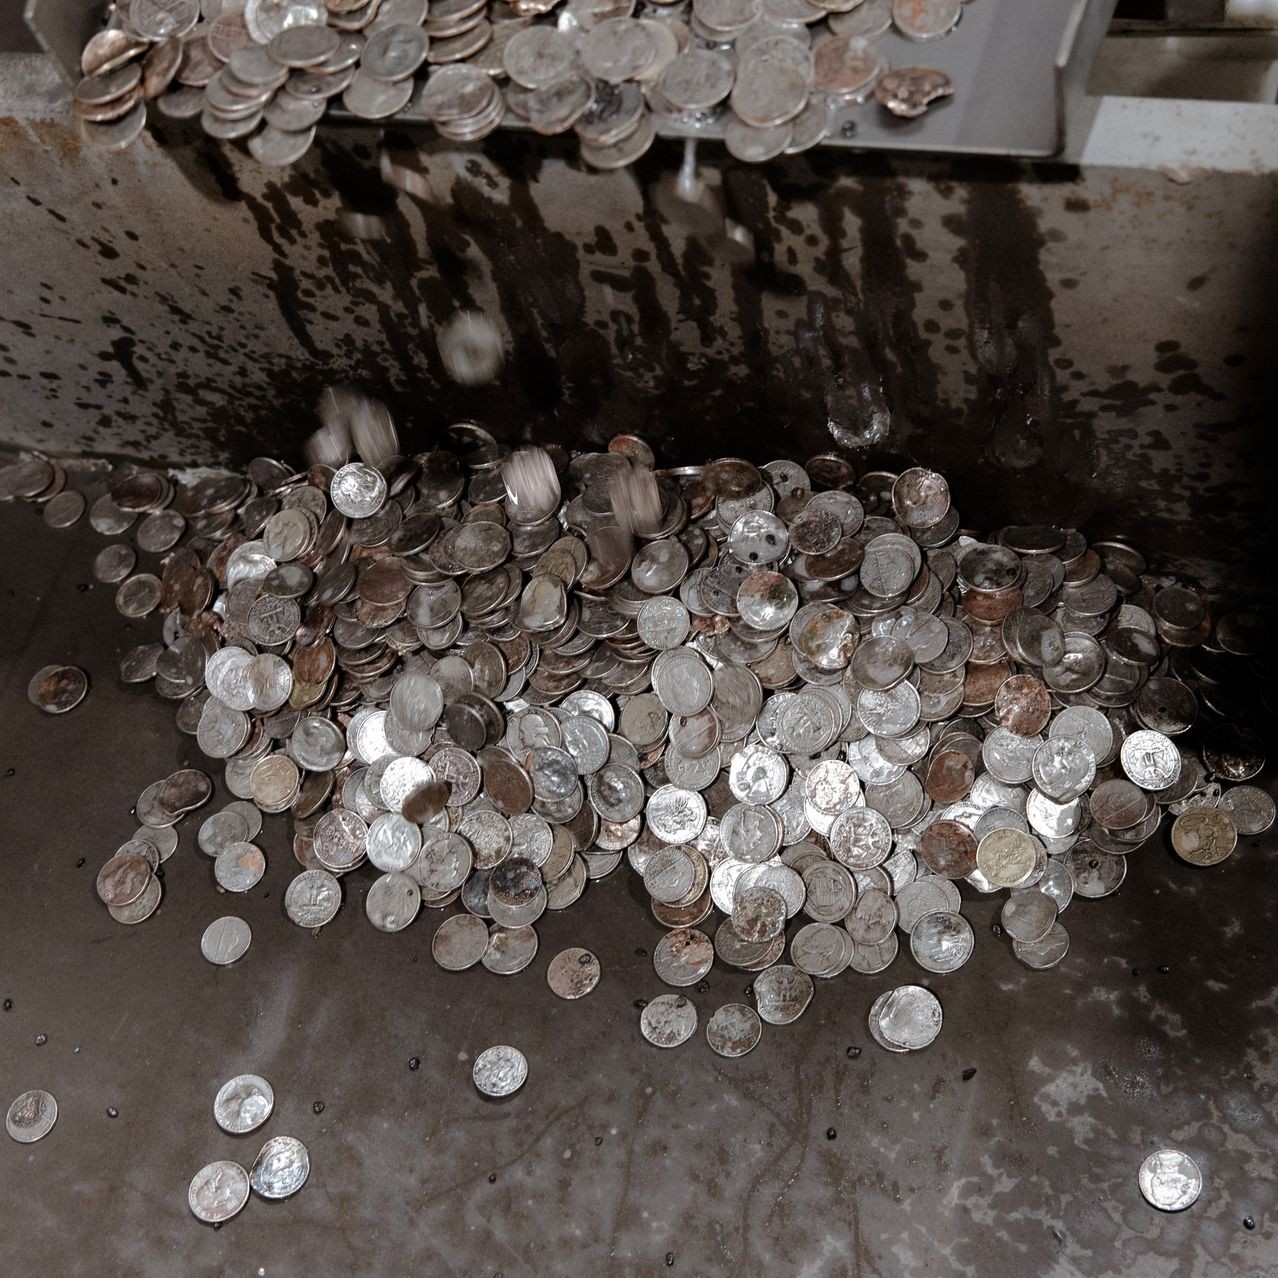 Người Mỹ vứt 68 triệu USD vào bãi rác mỗi năm: Chuyện nghề ‘đào vàng’ từ những đồng tiền ‘rác rưởi’, chính phủ tốn 707 triệu USD để sản xuất nhưng bị coi là đồ vô dụng- Ảnh 5.